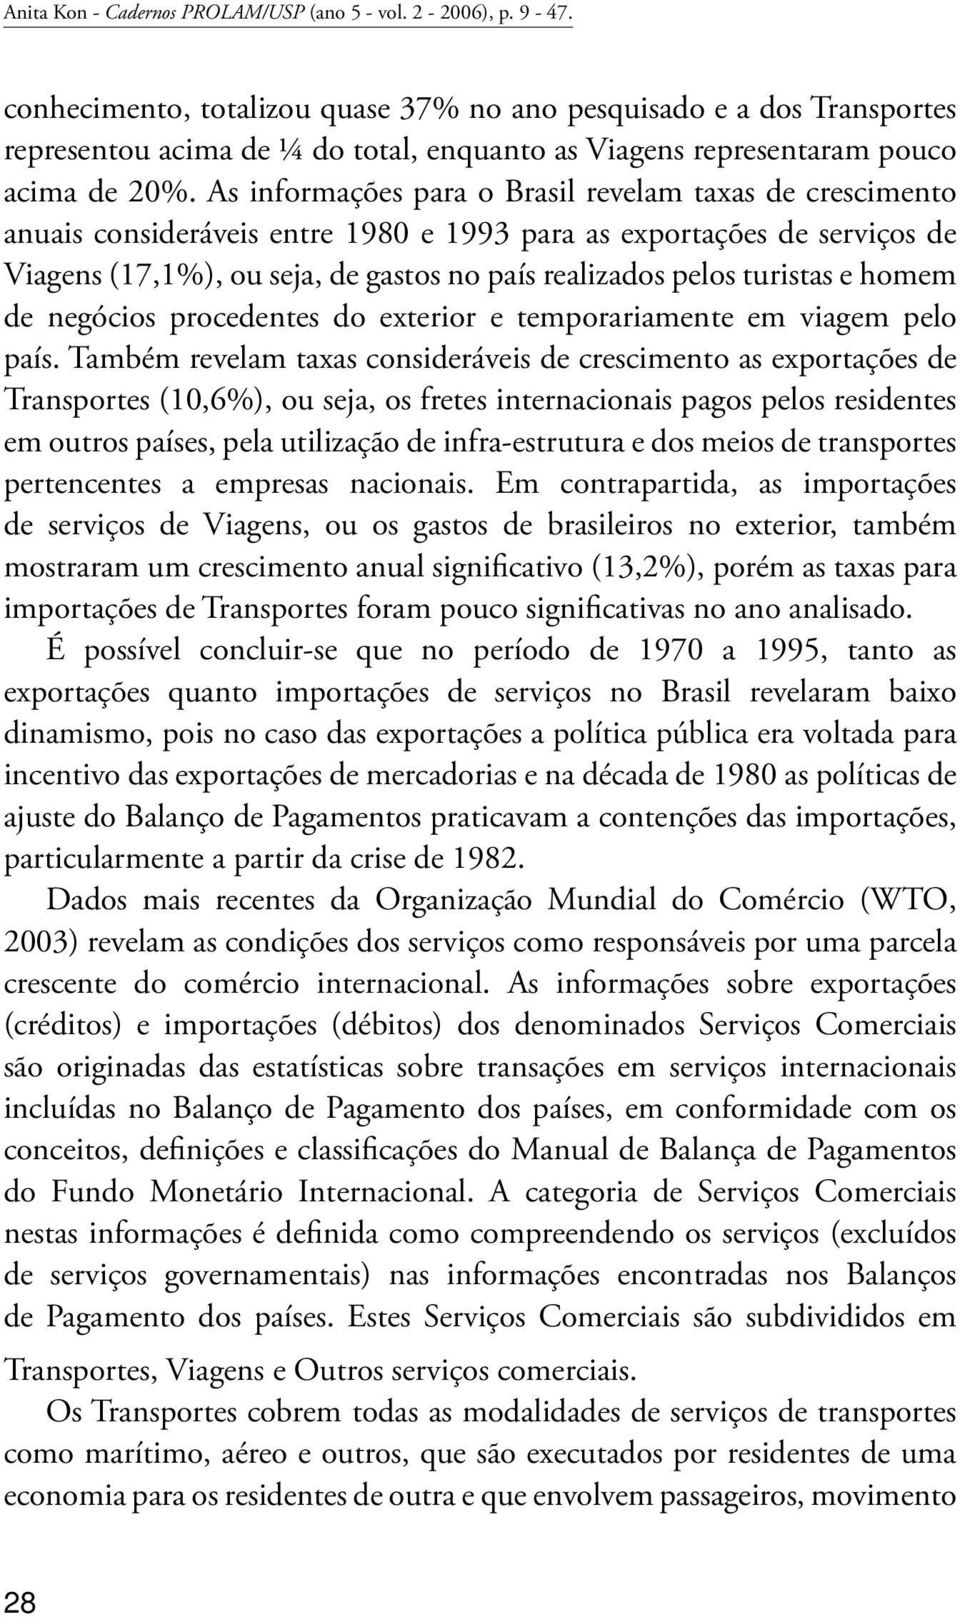 As informações para o Brasil revelam taxas de crescimento anuais consideráveis entre 1980 e 1993 para as exportações de serviços de Viagens (17,1%), ou seja, de gastos no país realizados pelos